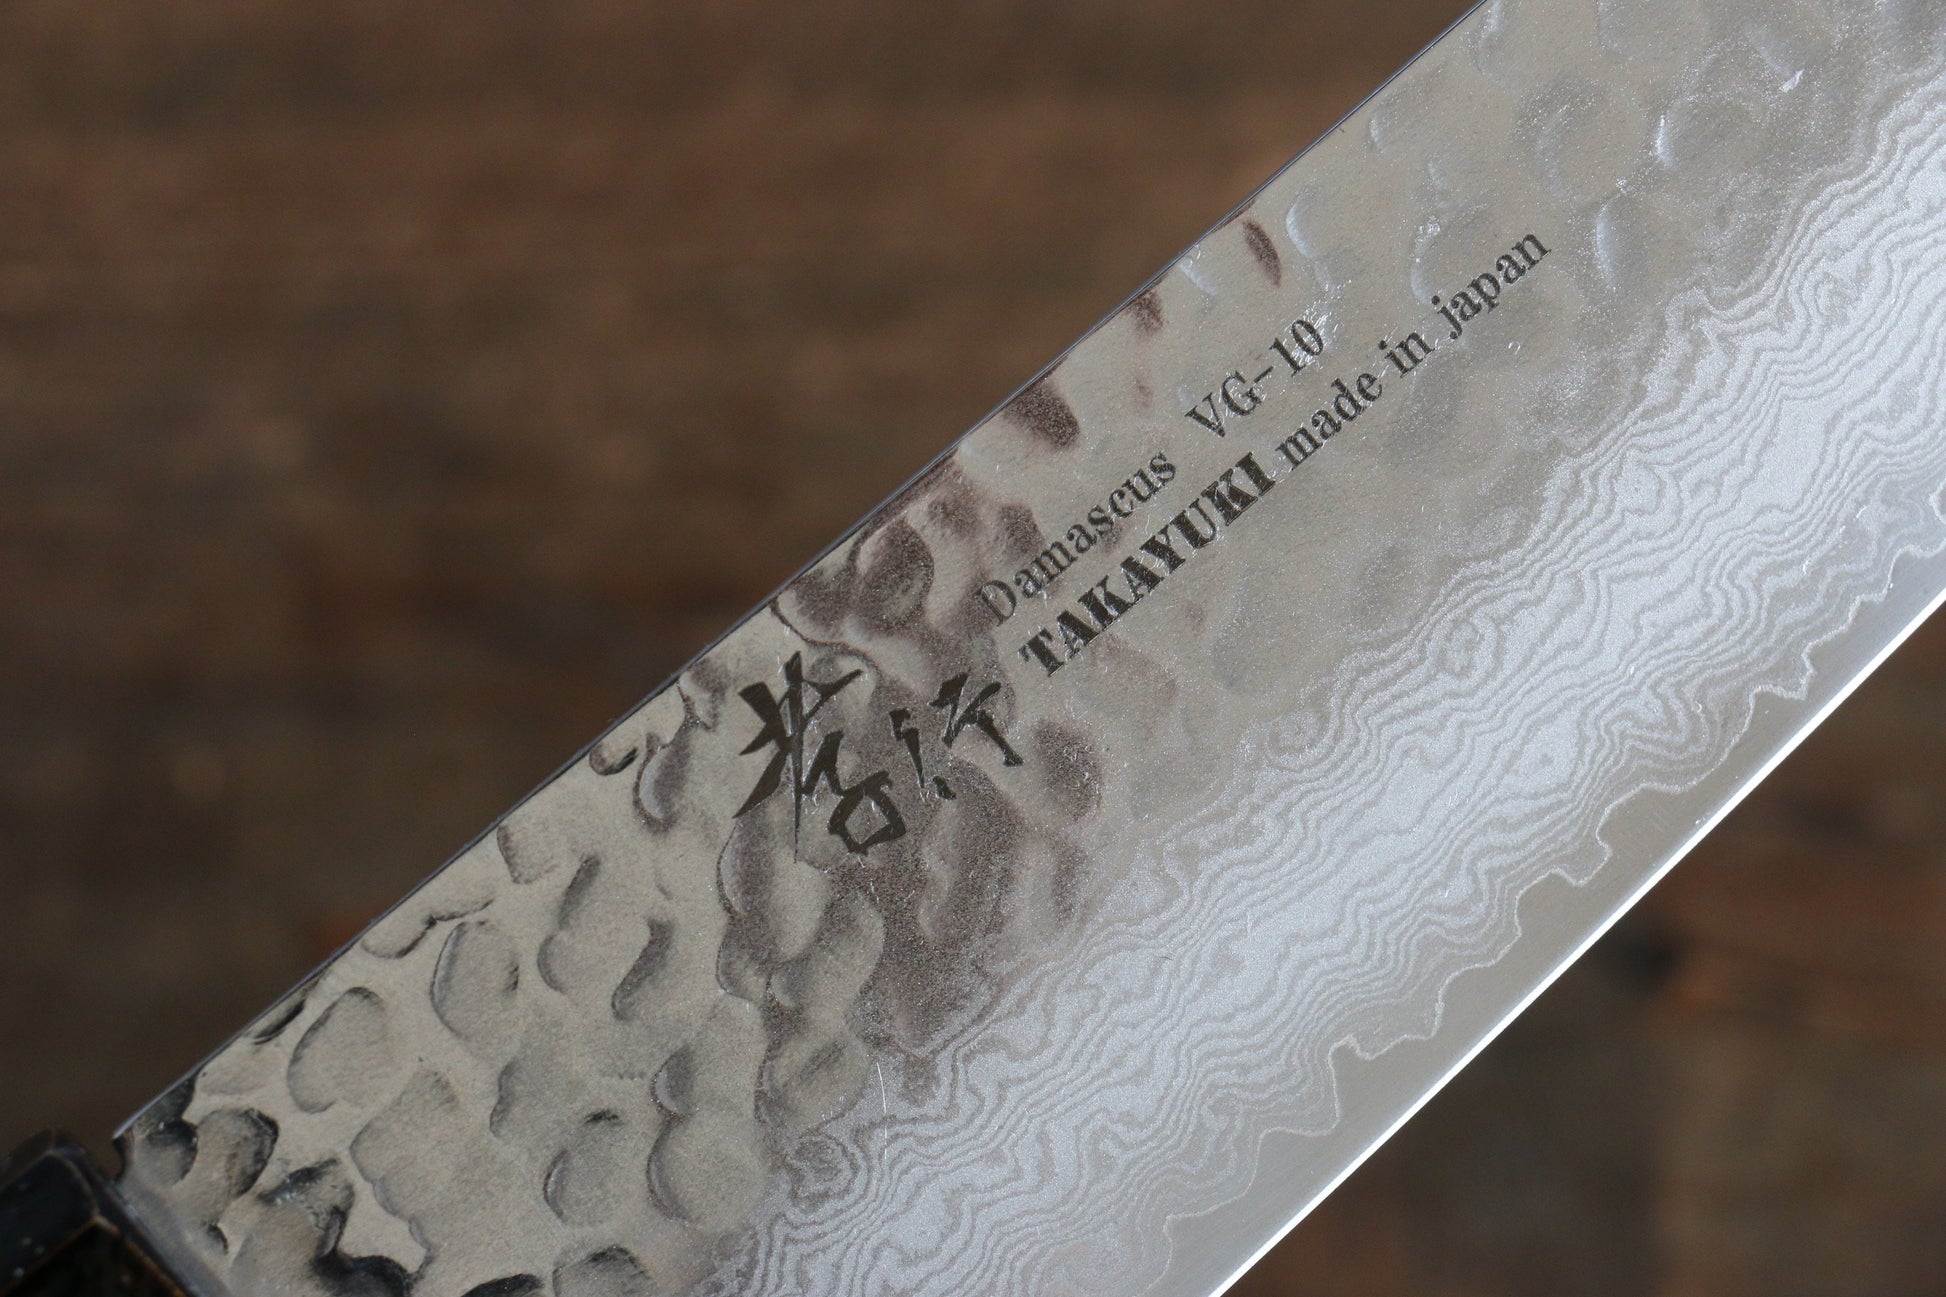 Sakai Takayuki VG10 33 Layer Damascus Gyuto Japanese Knife 240mm with Live oak Lacquered (Kokushin) Handle - Japanny - Best Japanese Knife